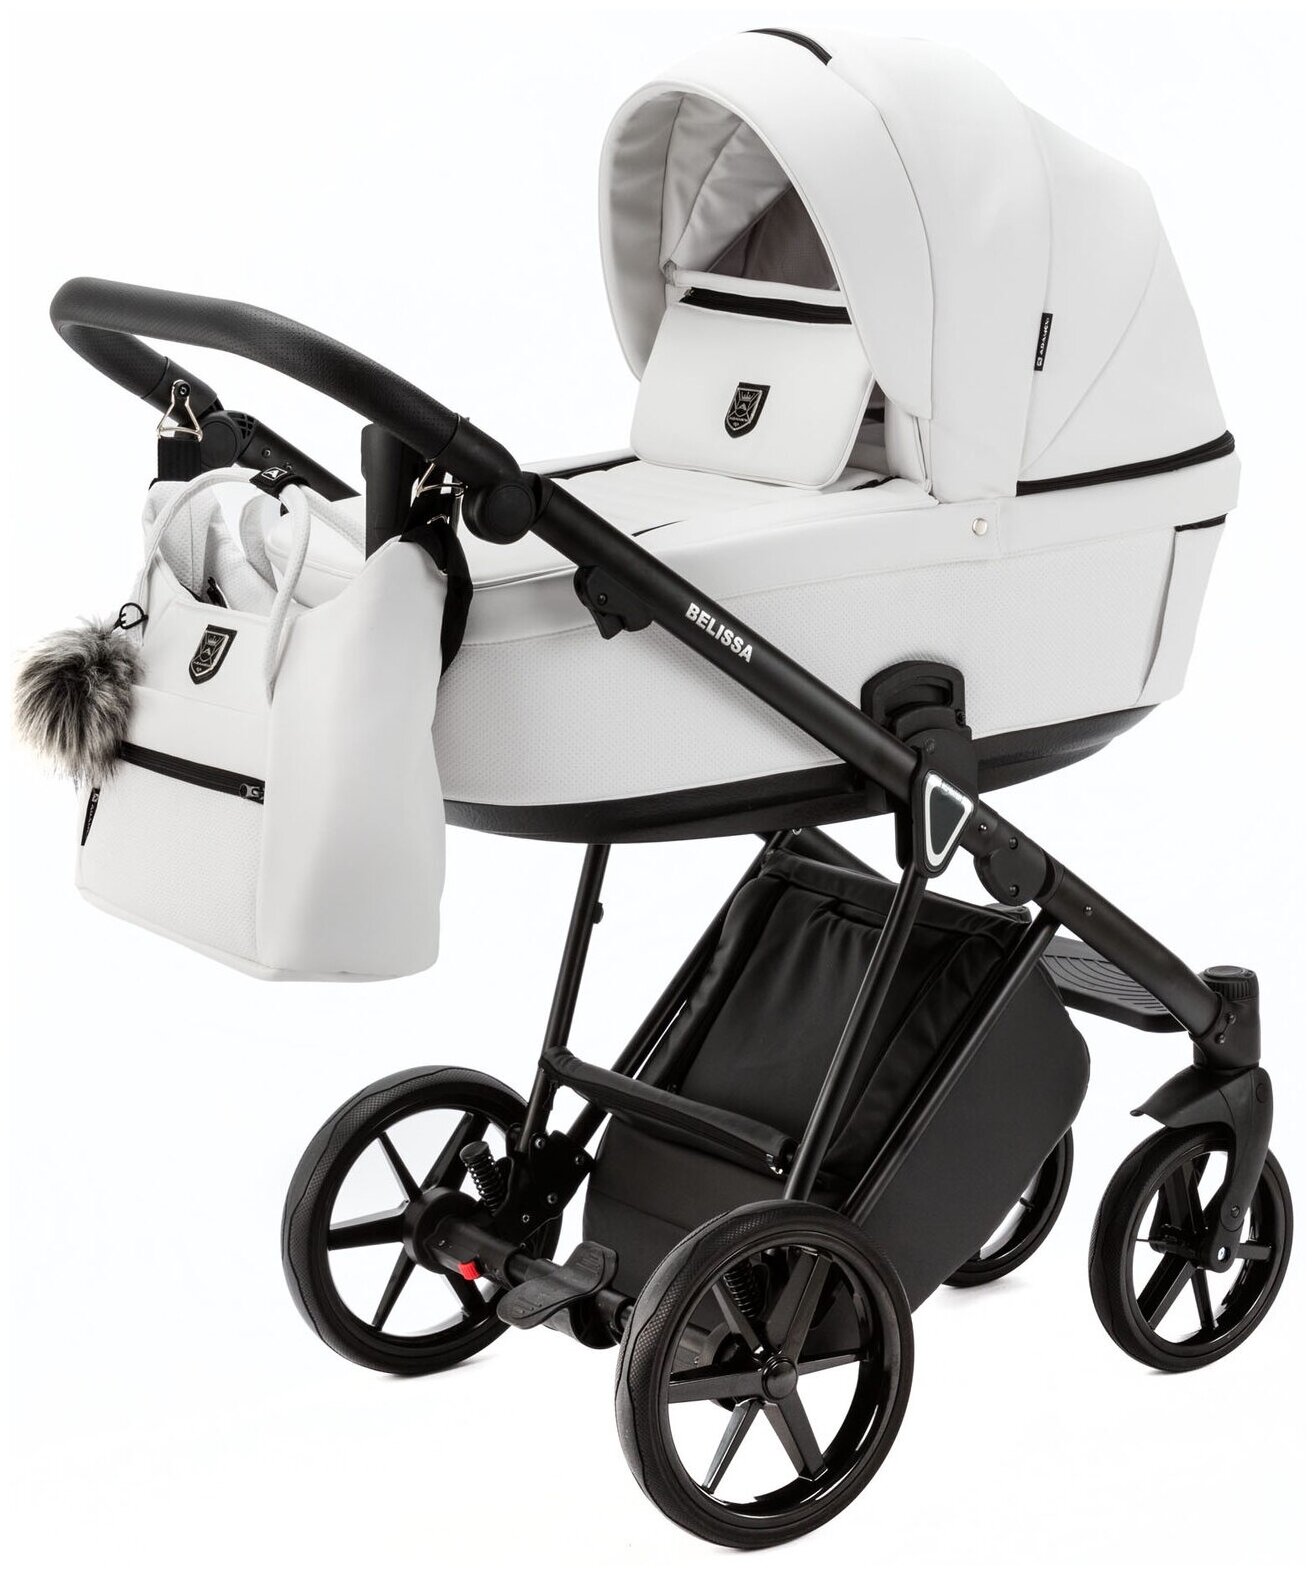 Коляска для новорожденных Adamex Belissa Deluxe, всесезонная прогулочная детская коляска 2 в 1 белая эко-кожа